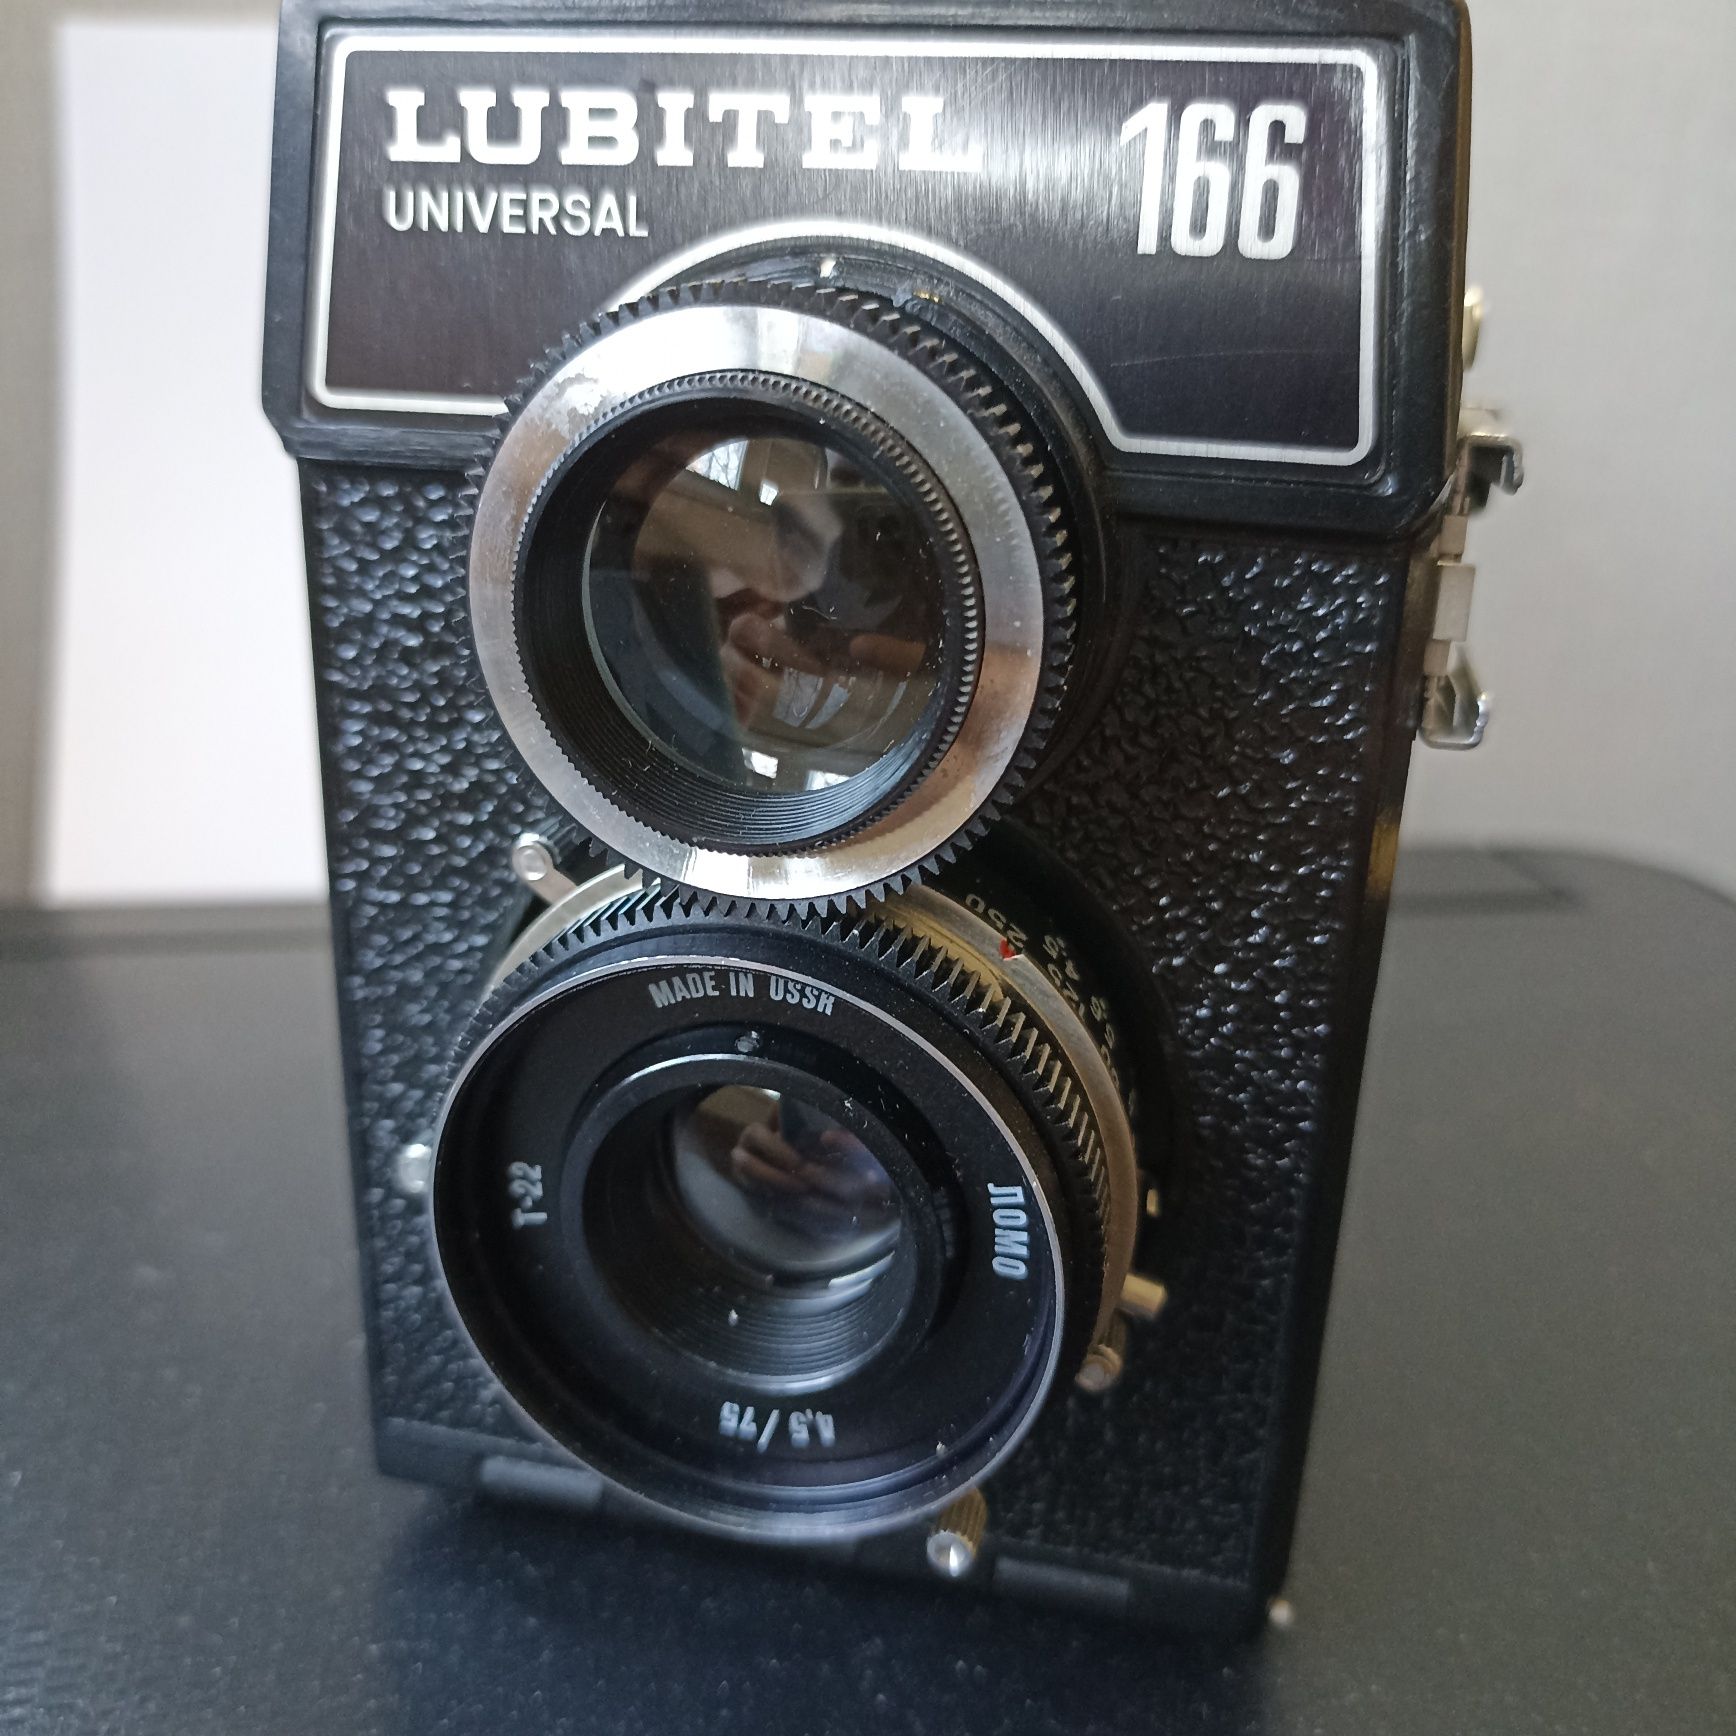 Продам фотоапарат Lubitel 166 universal